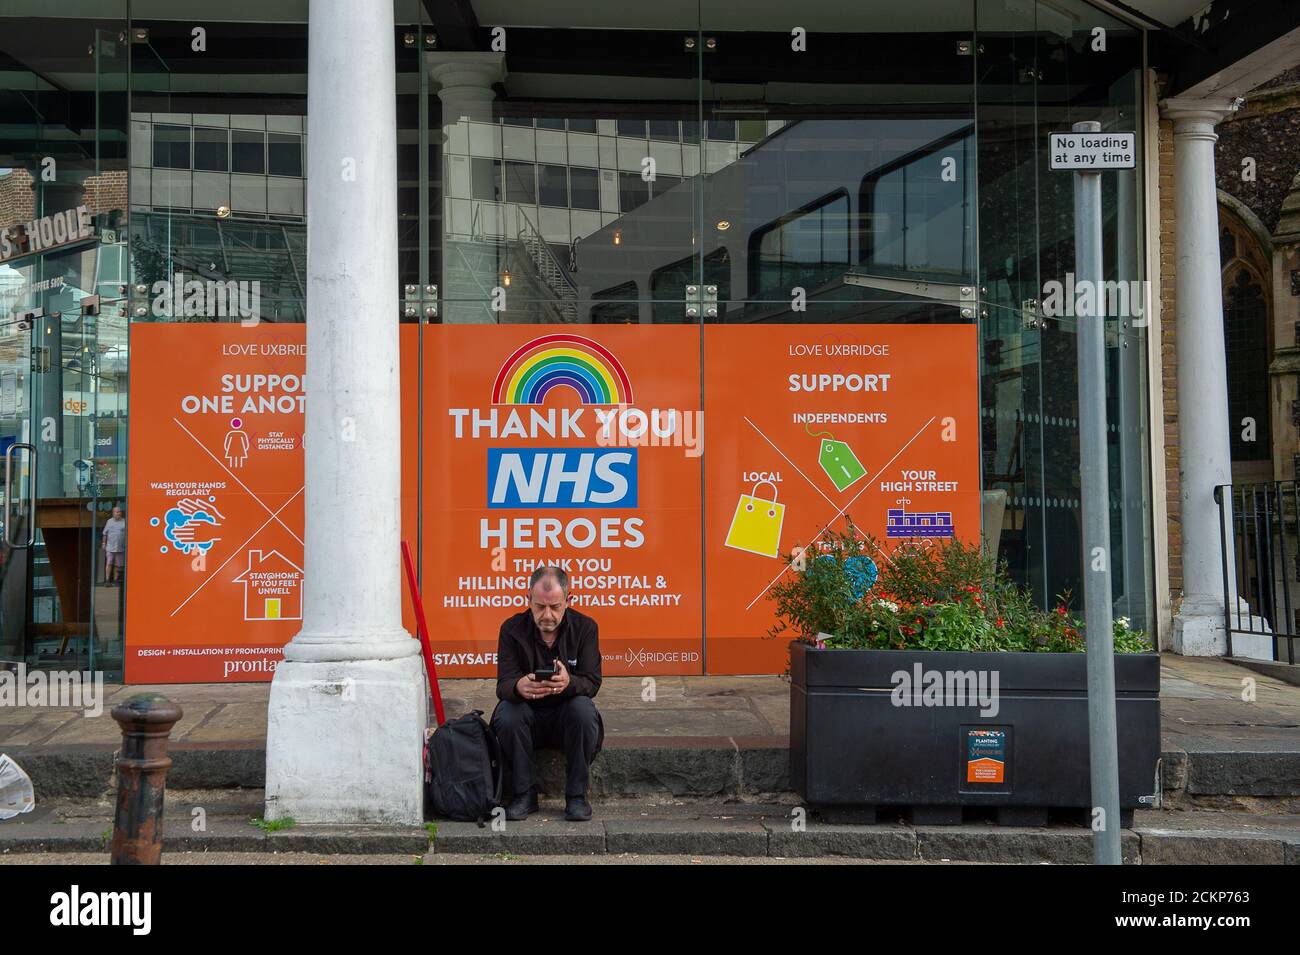 Uxbridge, London Borough of Hillingdon, Großbritannien. September 2020. Ein Mann sitzt neben einem Thank You NHS Heroes Poster in Uxbridge. Viele dieser Plakate wurden in den Stadtzentren entfernt. Quelle: Maureen McLean/Alamy Stockfoto